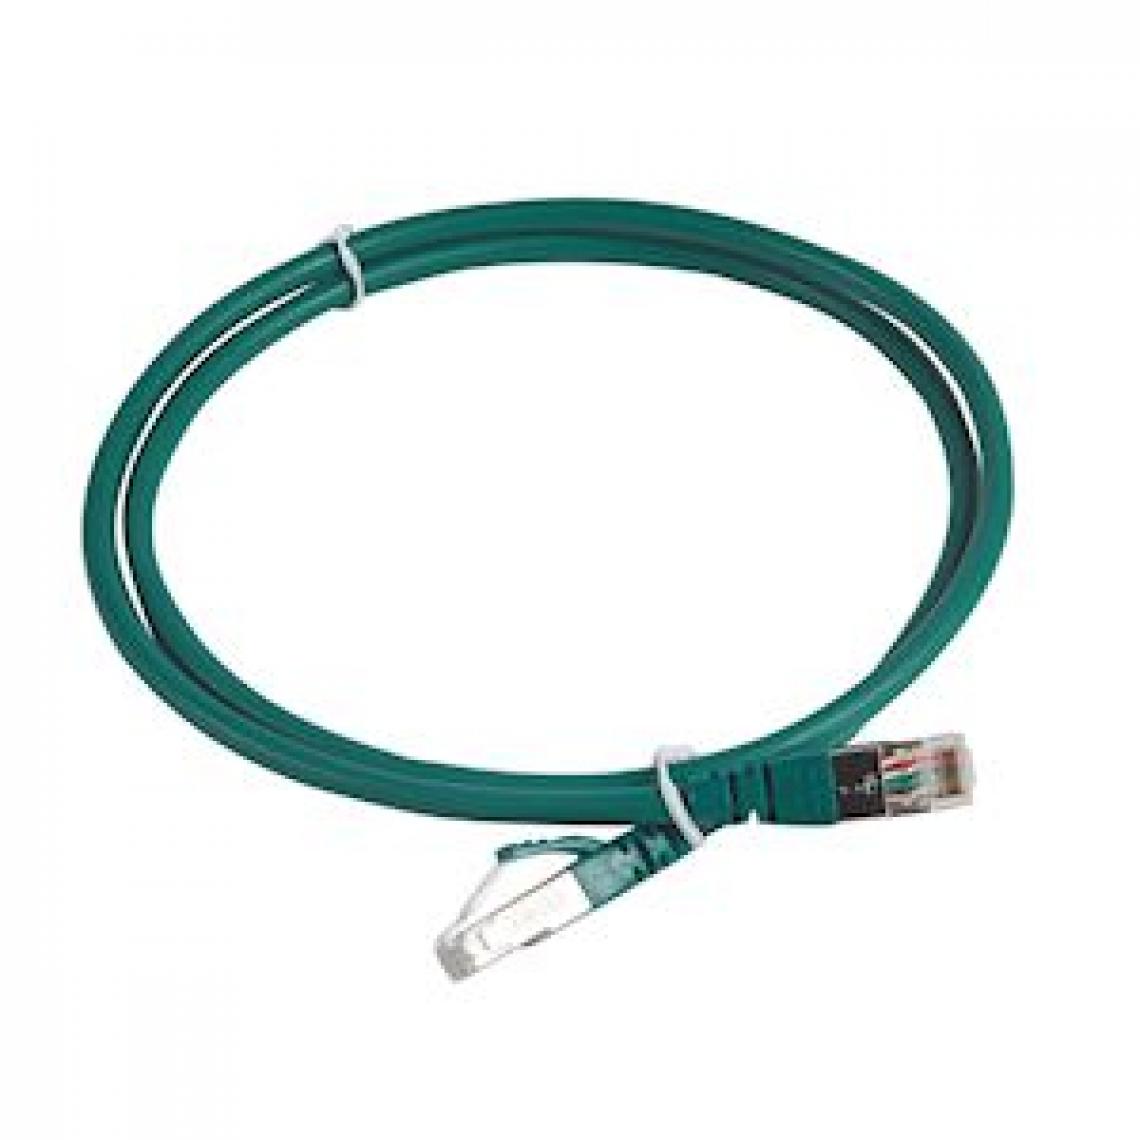 Legrand - cordon de brassage rj45 - c6a - s/ftp - vert - 1 mètre - legrand 051866 - Fils et câbles électriques